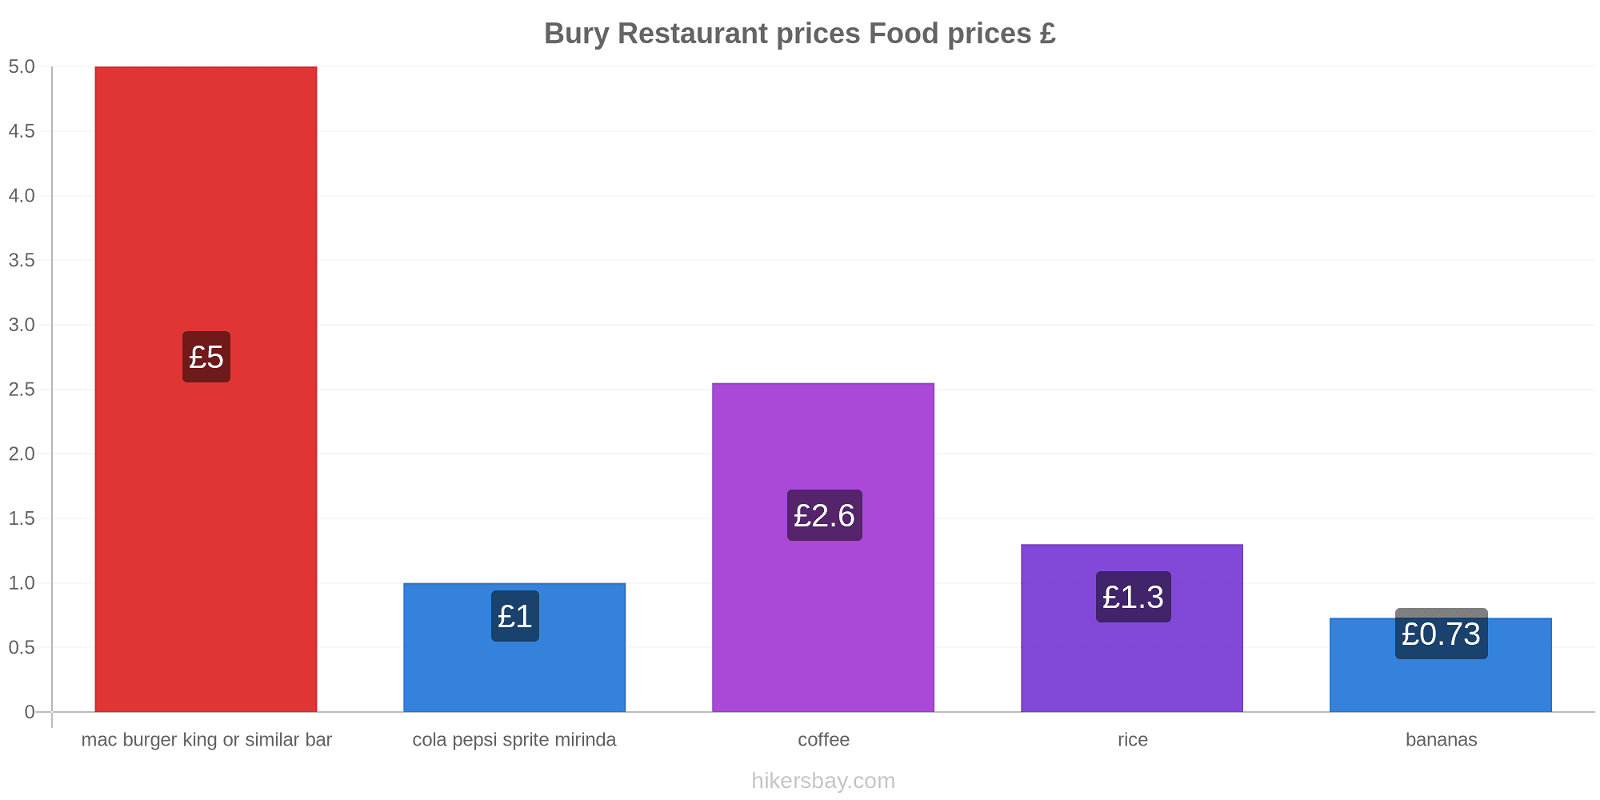 Bury price changes hikersbay.com